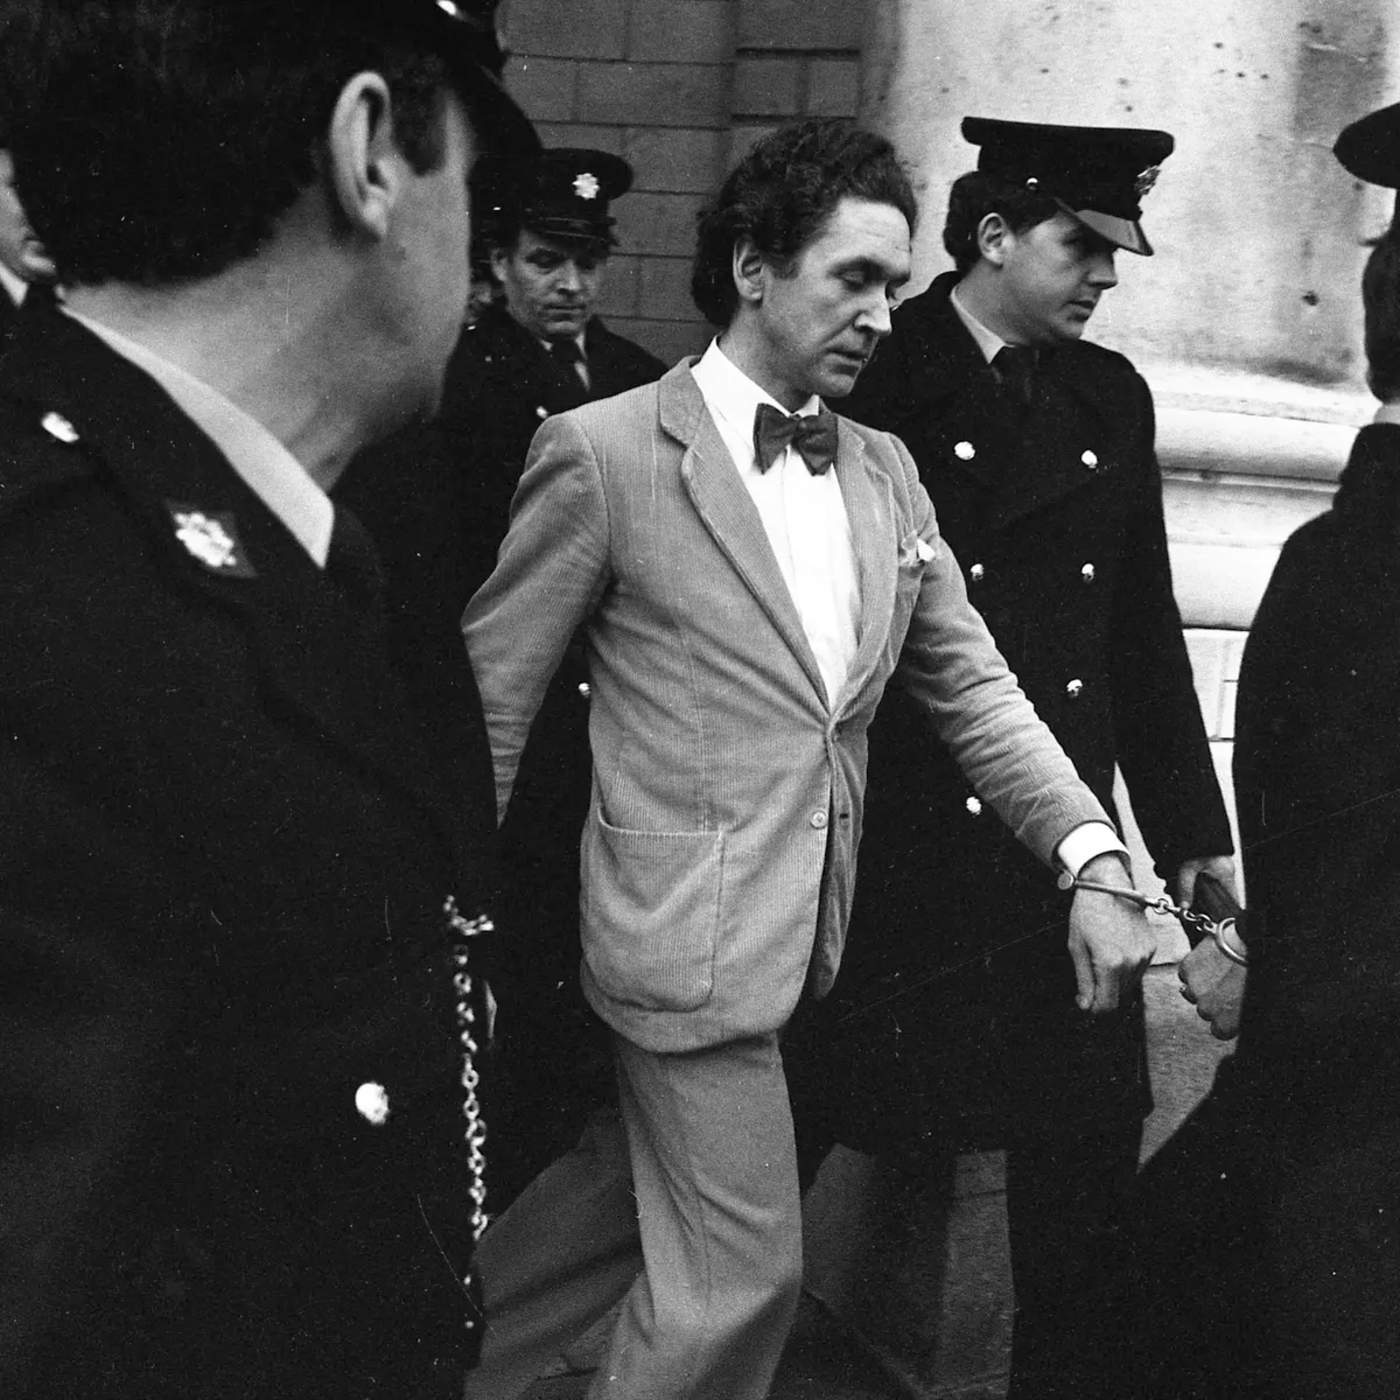 Grotesc, inversemblant, demencial i insòlit: Malcolm Macarthur, l’assassí que va commocionar Irlanda